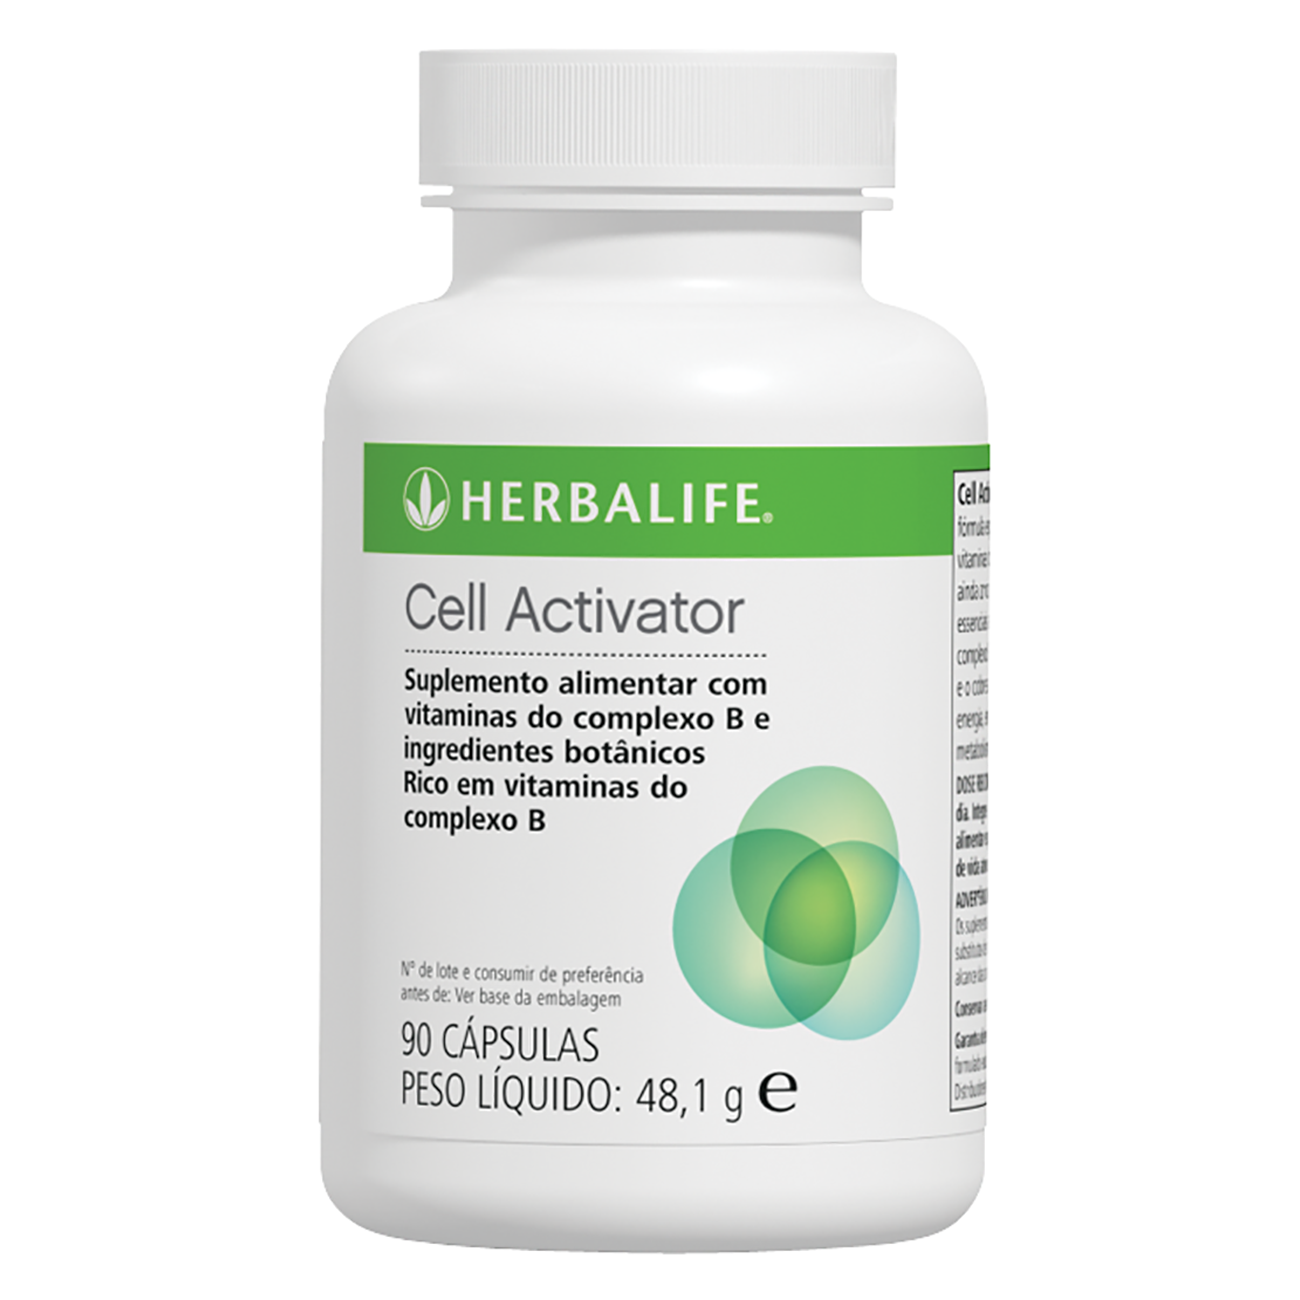 Cell Activator Suplemento de vitaminas do Complexo B  product shot